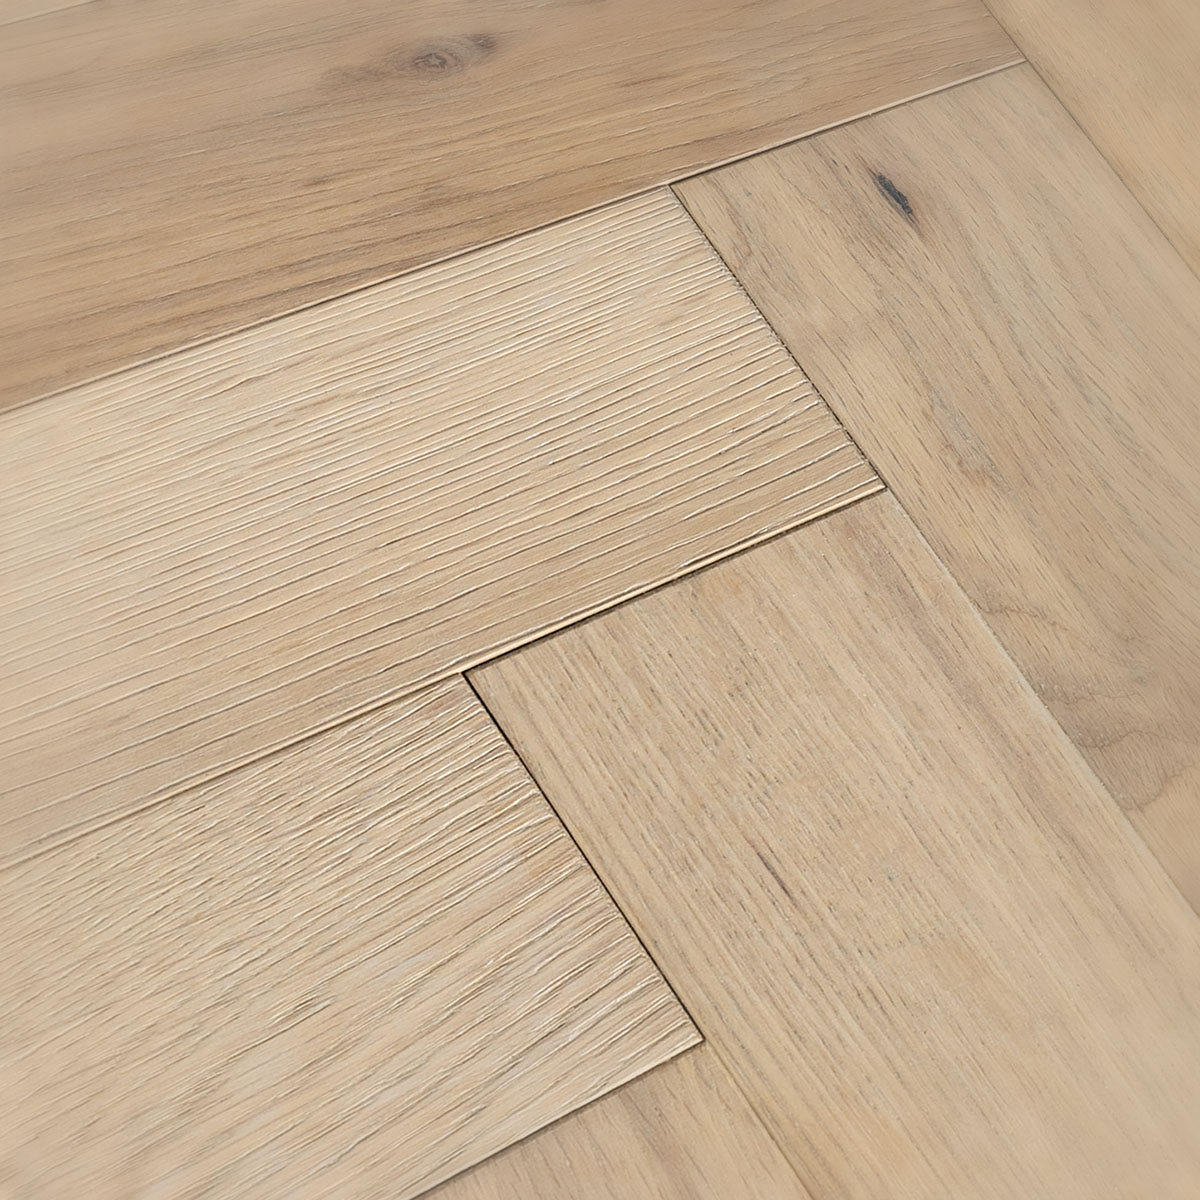 Bell Lane - Rustic Oak Herringbone Floor 280mm x 70mm